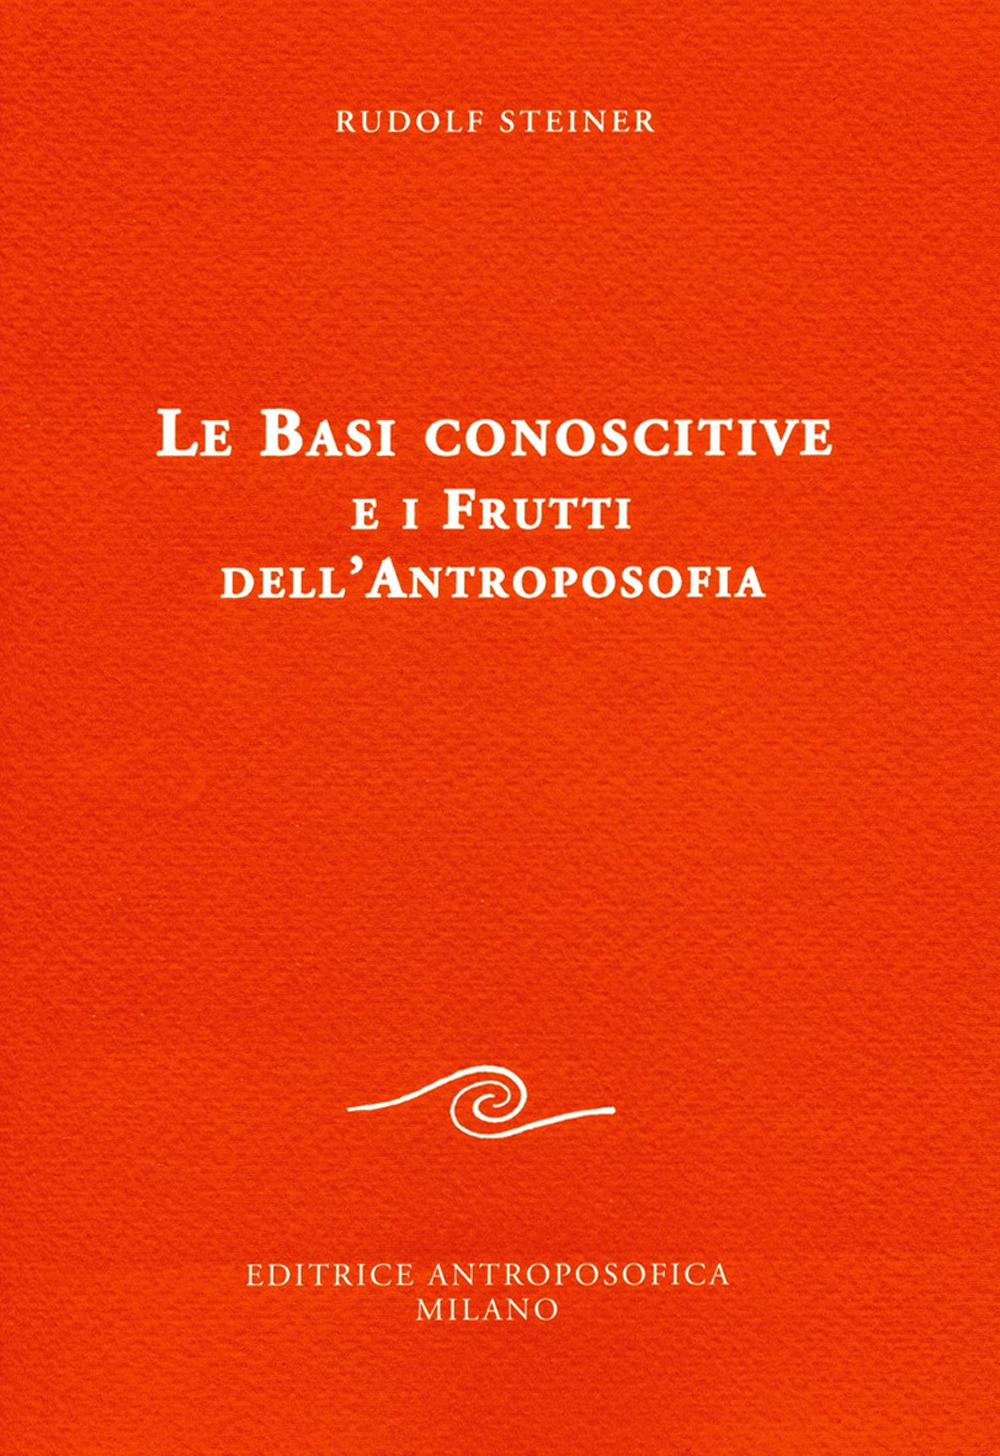 Image of Le basi conoscitive e i frutti dell'antroposofia